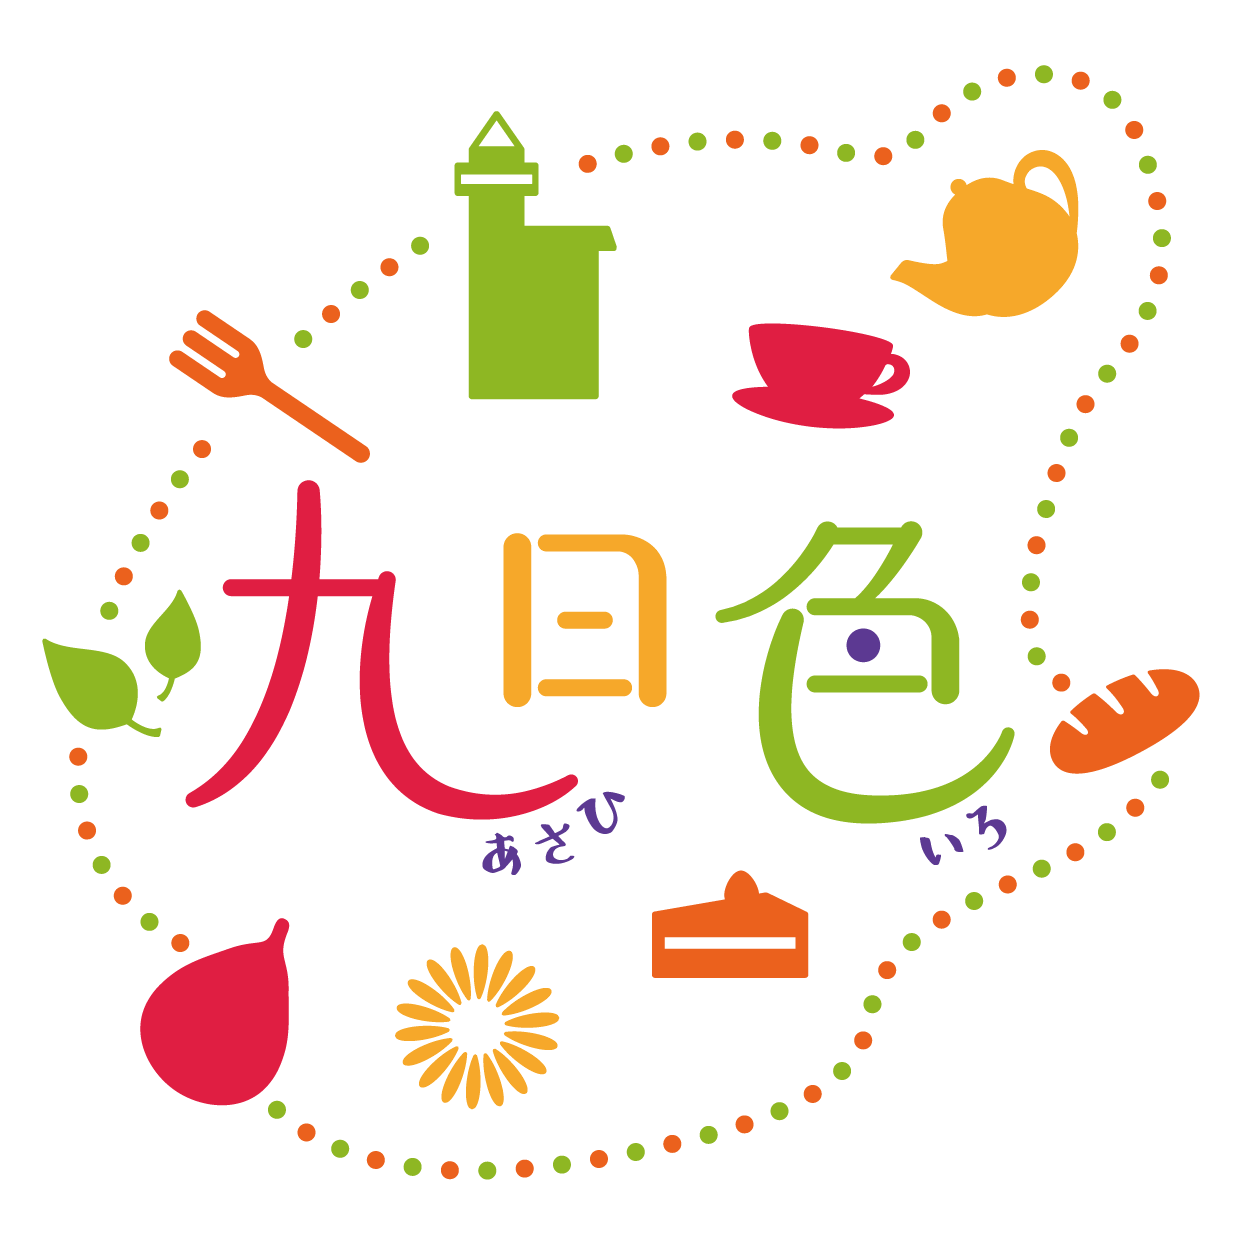 尾張旭市マップ's avatar